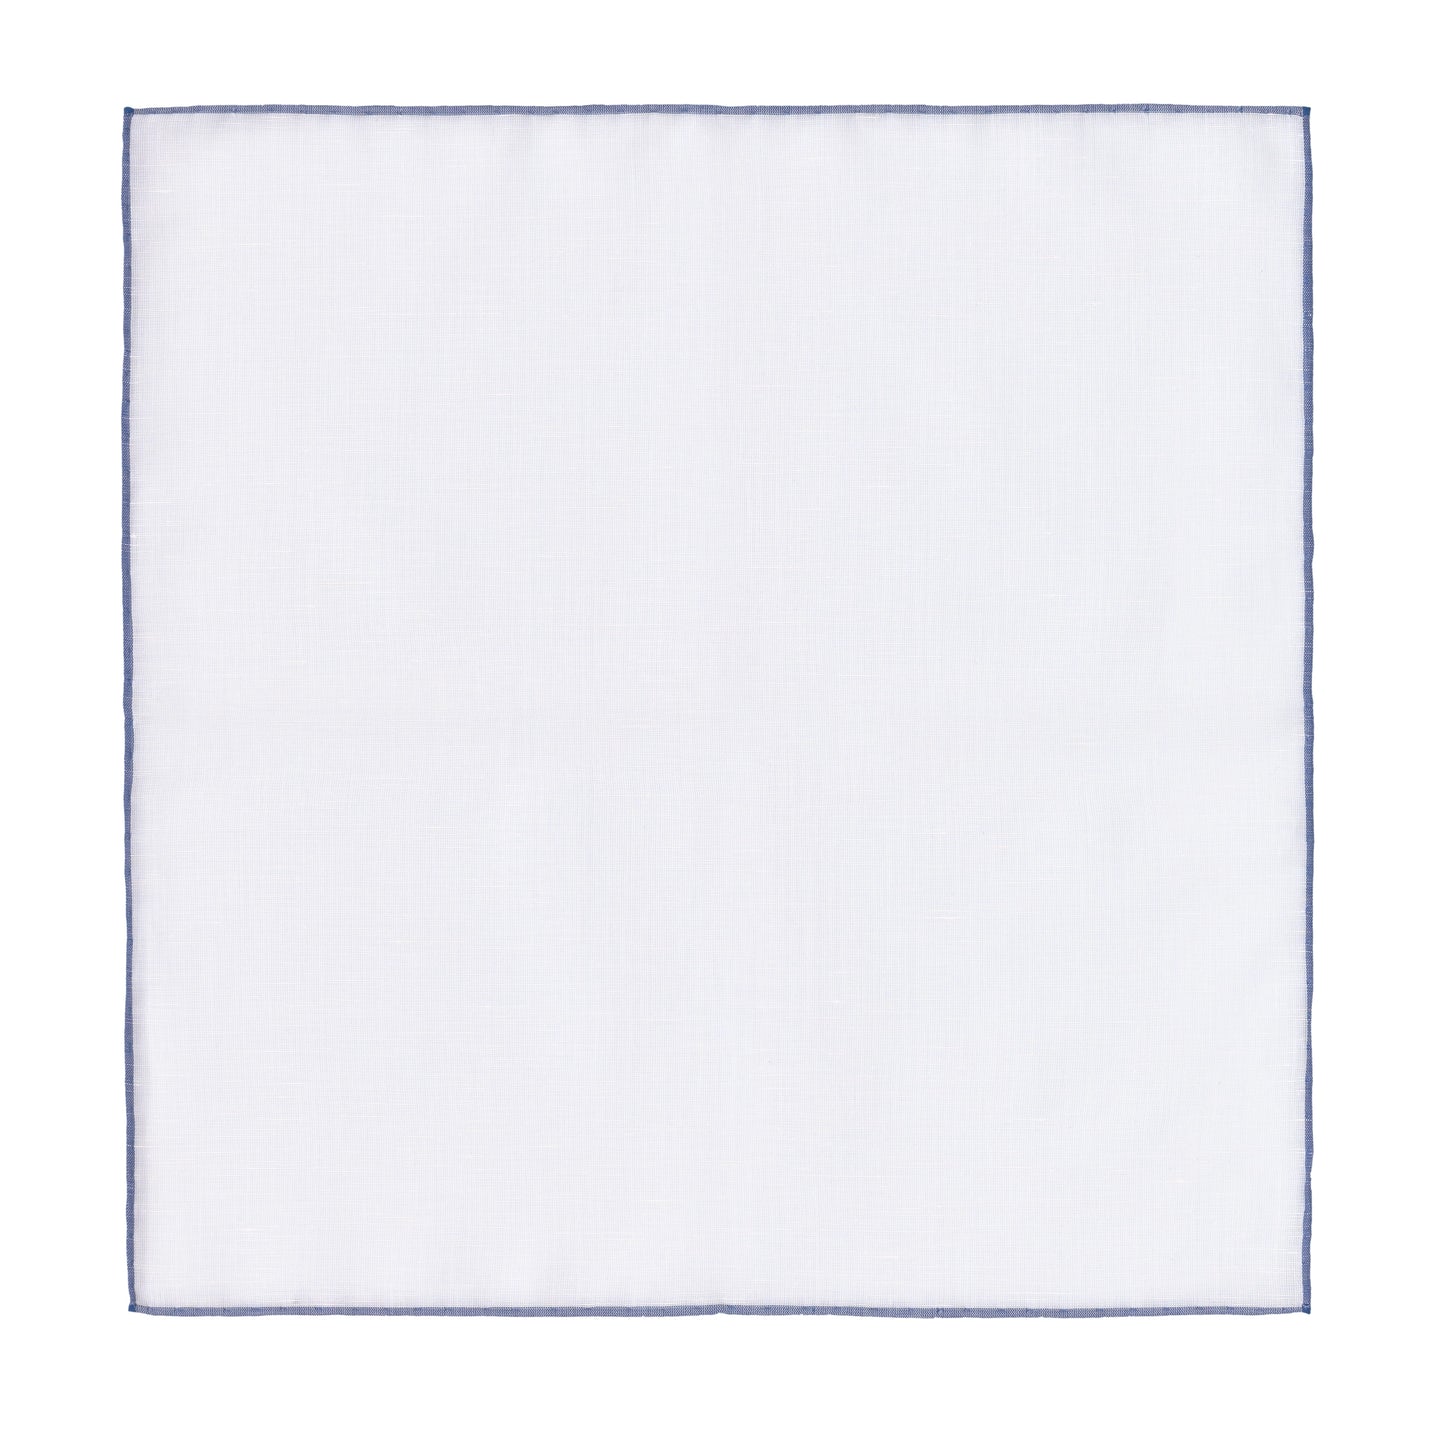 Einstecktuch aus Baumwollmischung in Weiß mit blauen Kanten